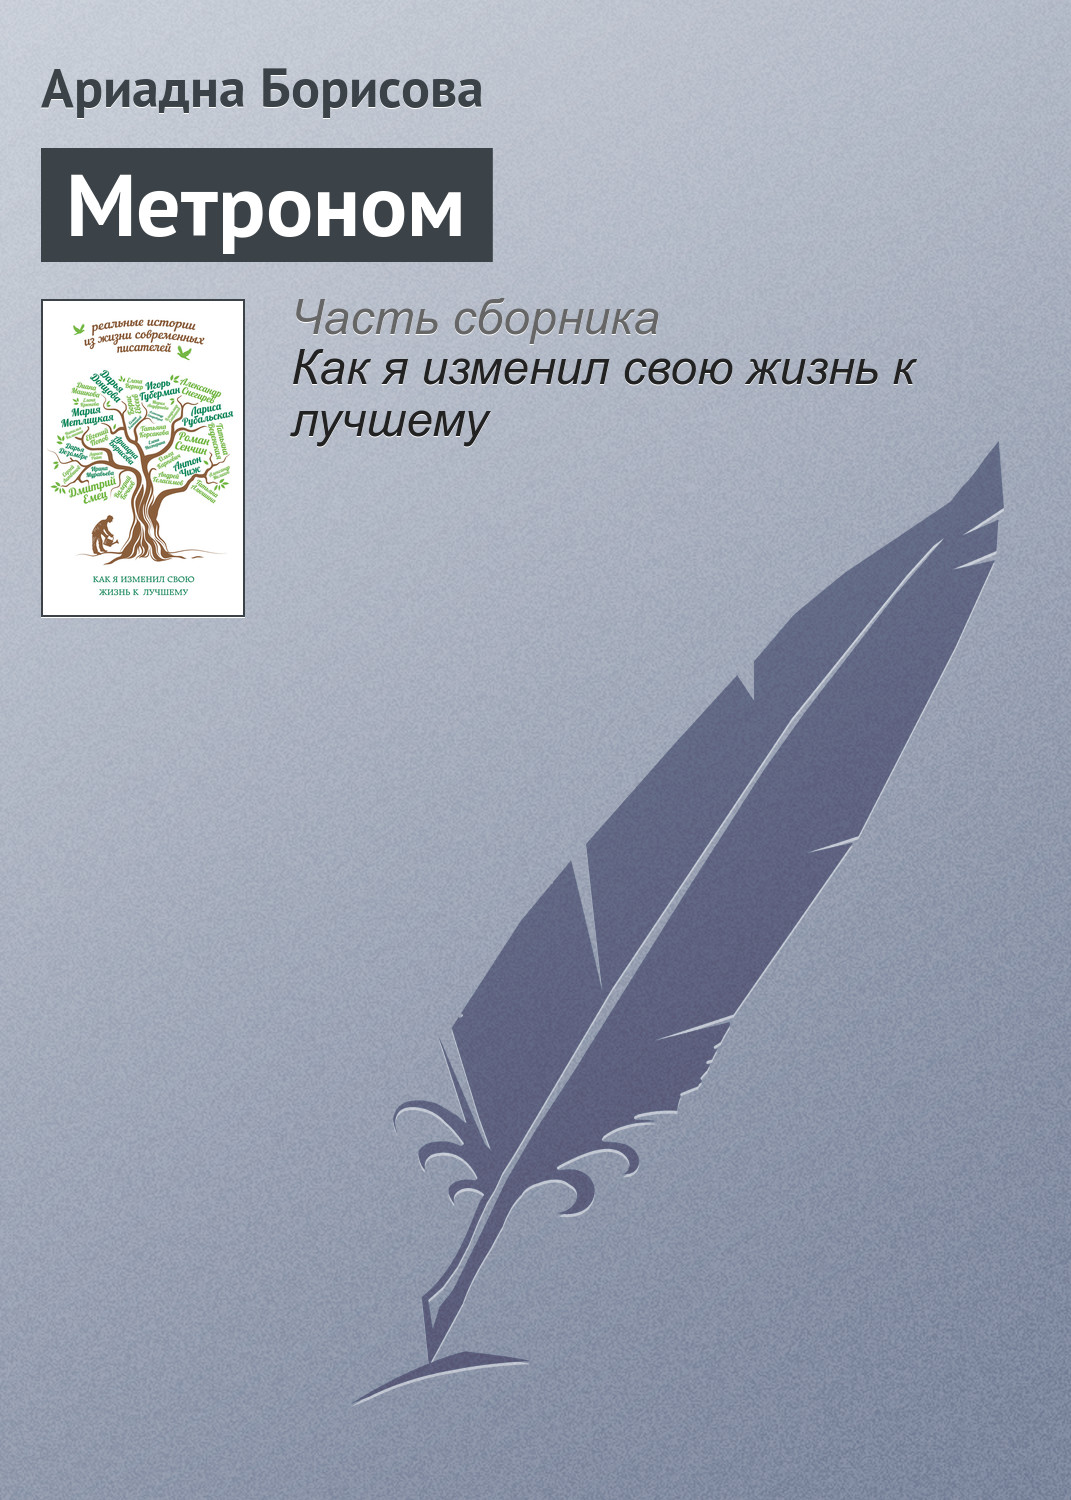 Книга Метроном из серии , созданная Ариадна Борисова, может относится к жанру Биографии и Мемуары. Стоимость электронной книги Метроном с идентификатором 16110024 составляет 29.95 руб.